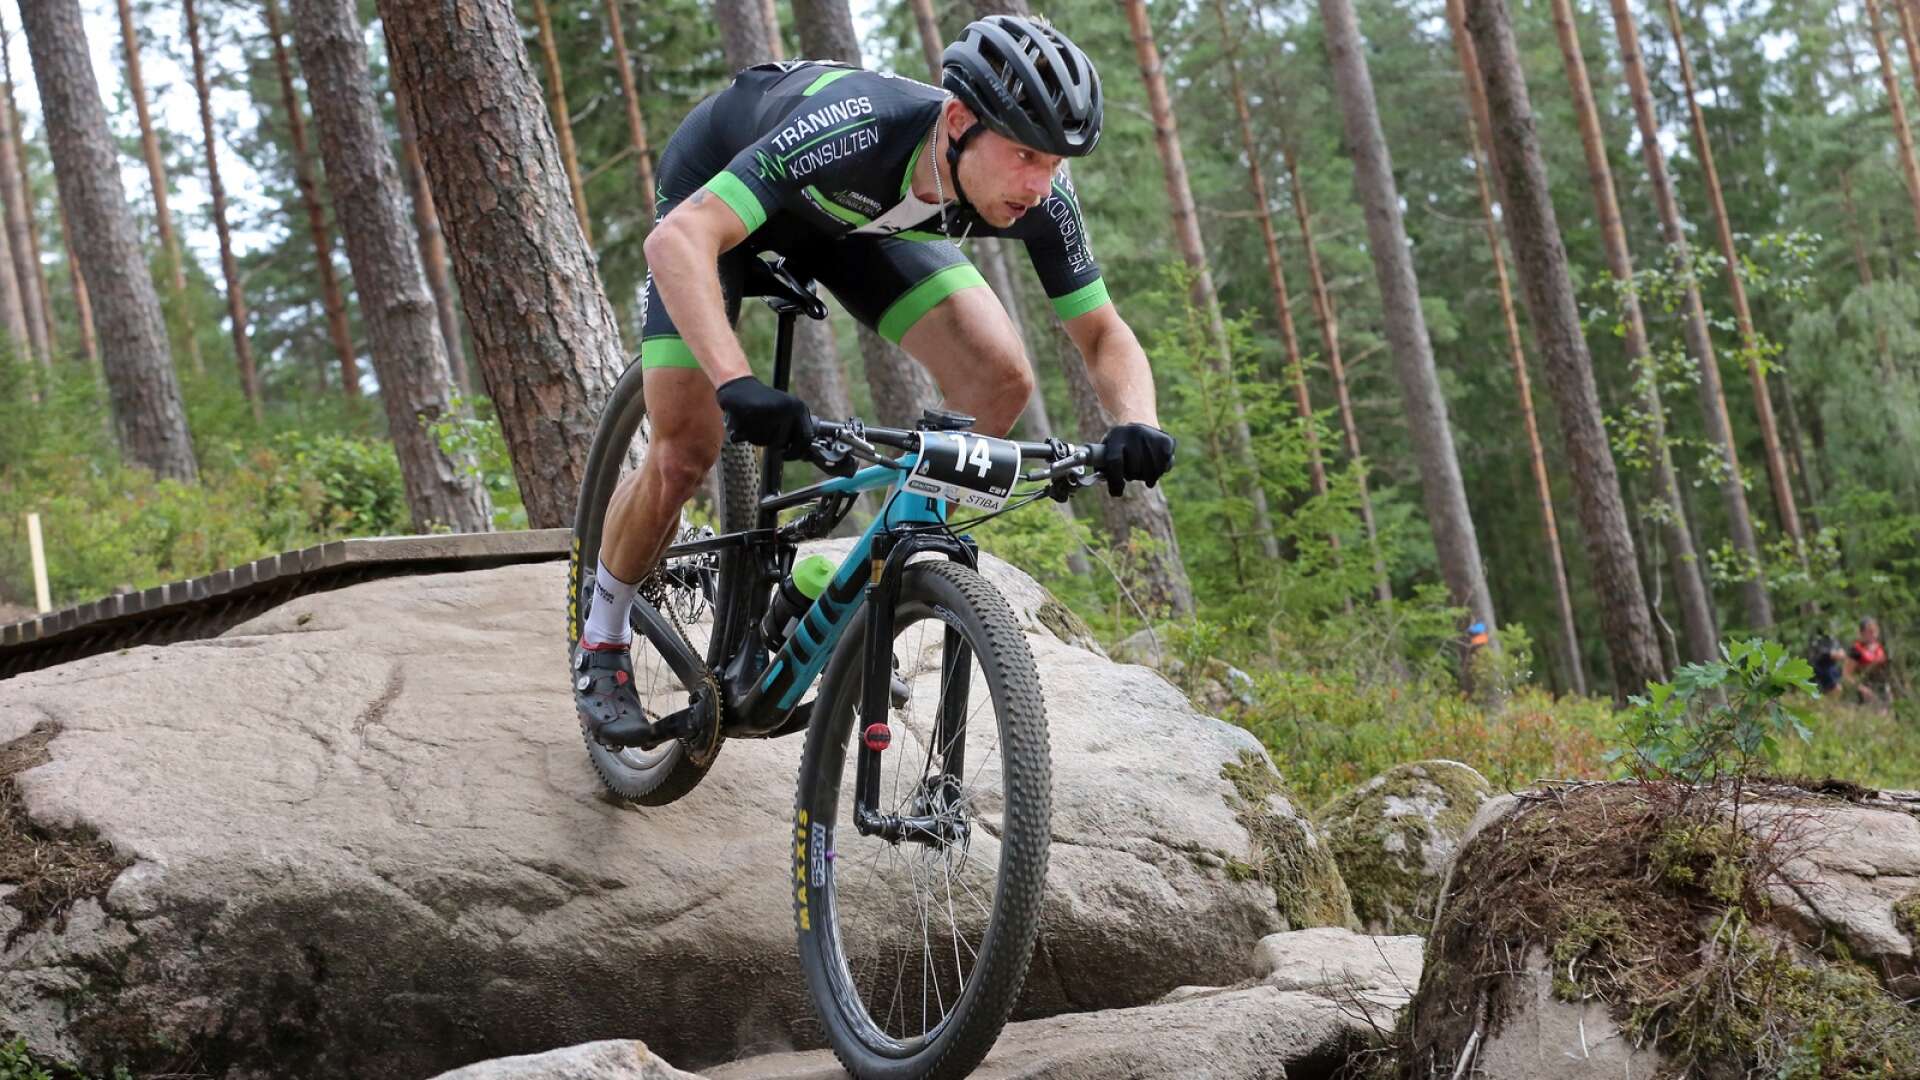 Träningskonsultens Jesper Svensson tog en stark femteplats när mountainbikens XCO-SM avgjordes på Kransmossen i Borås.